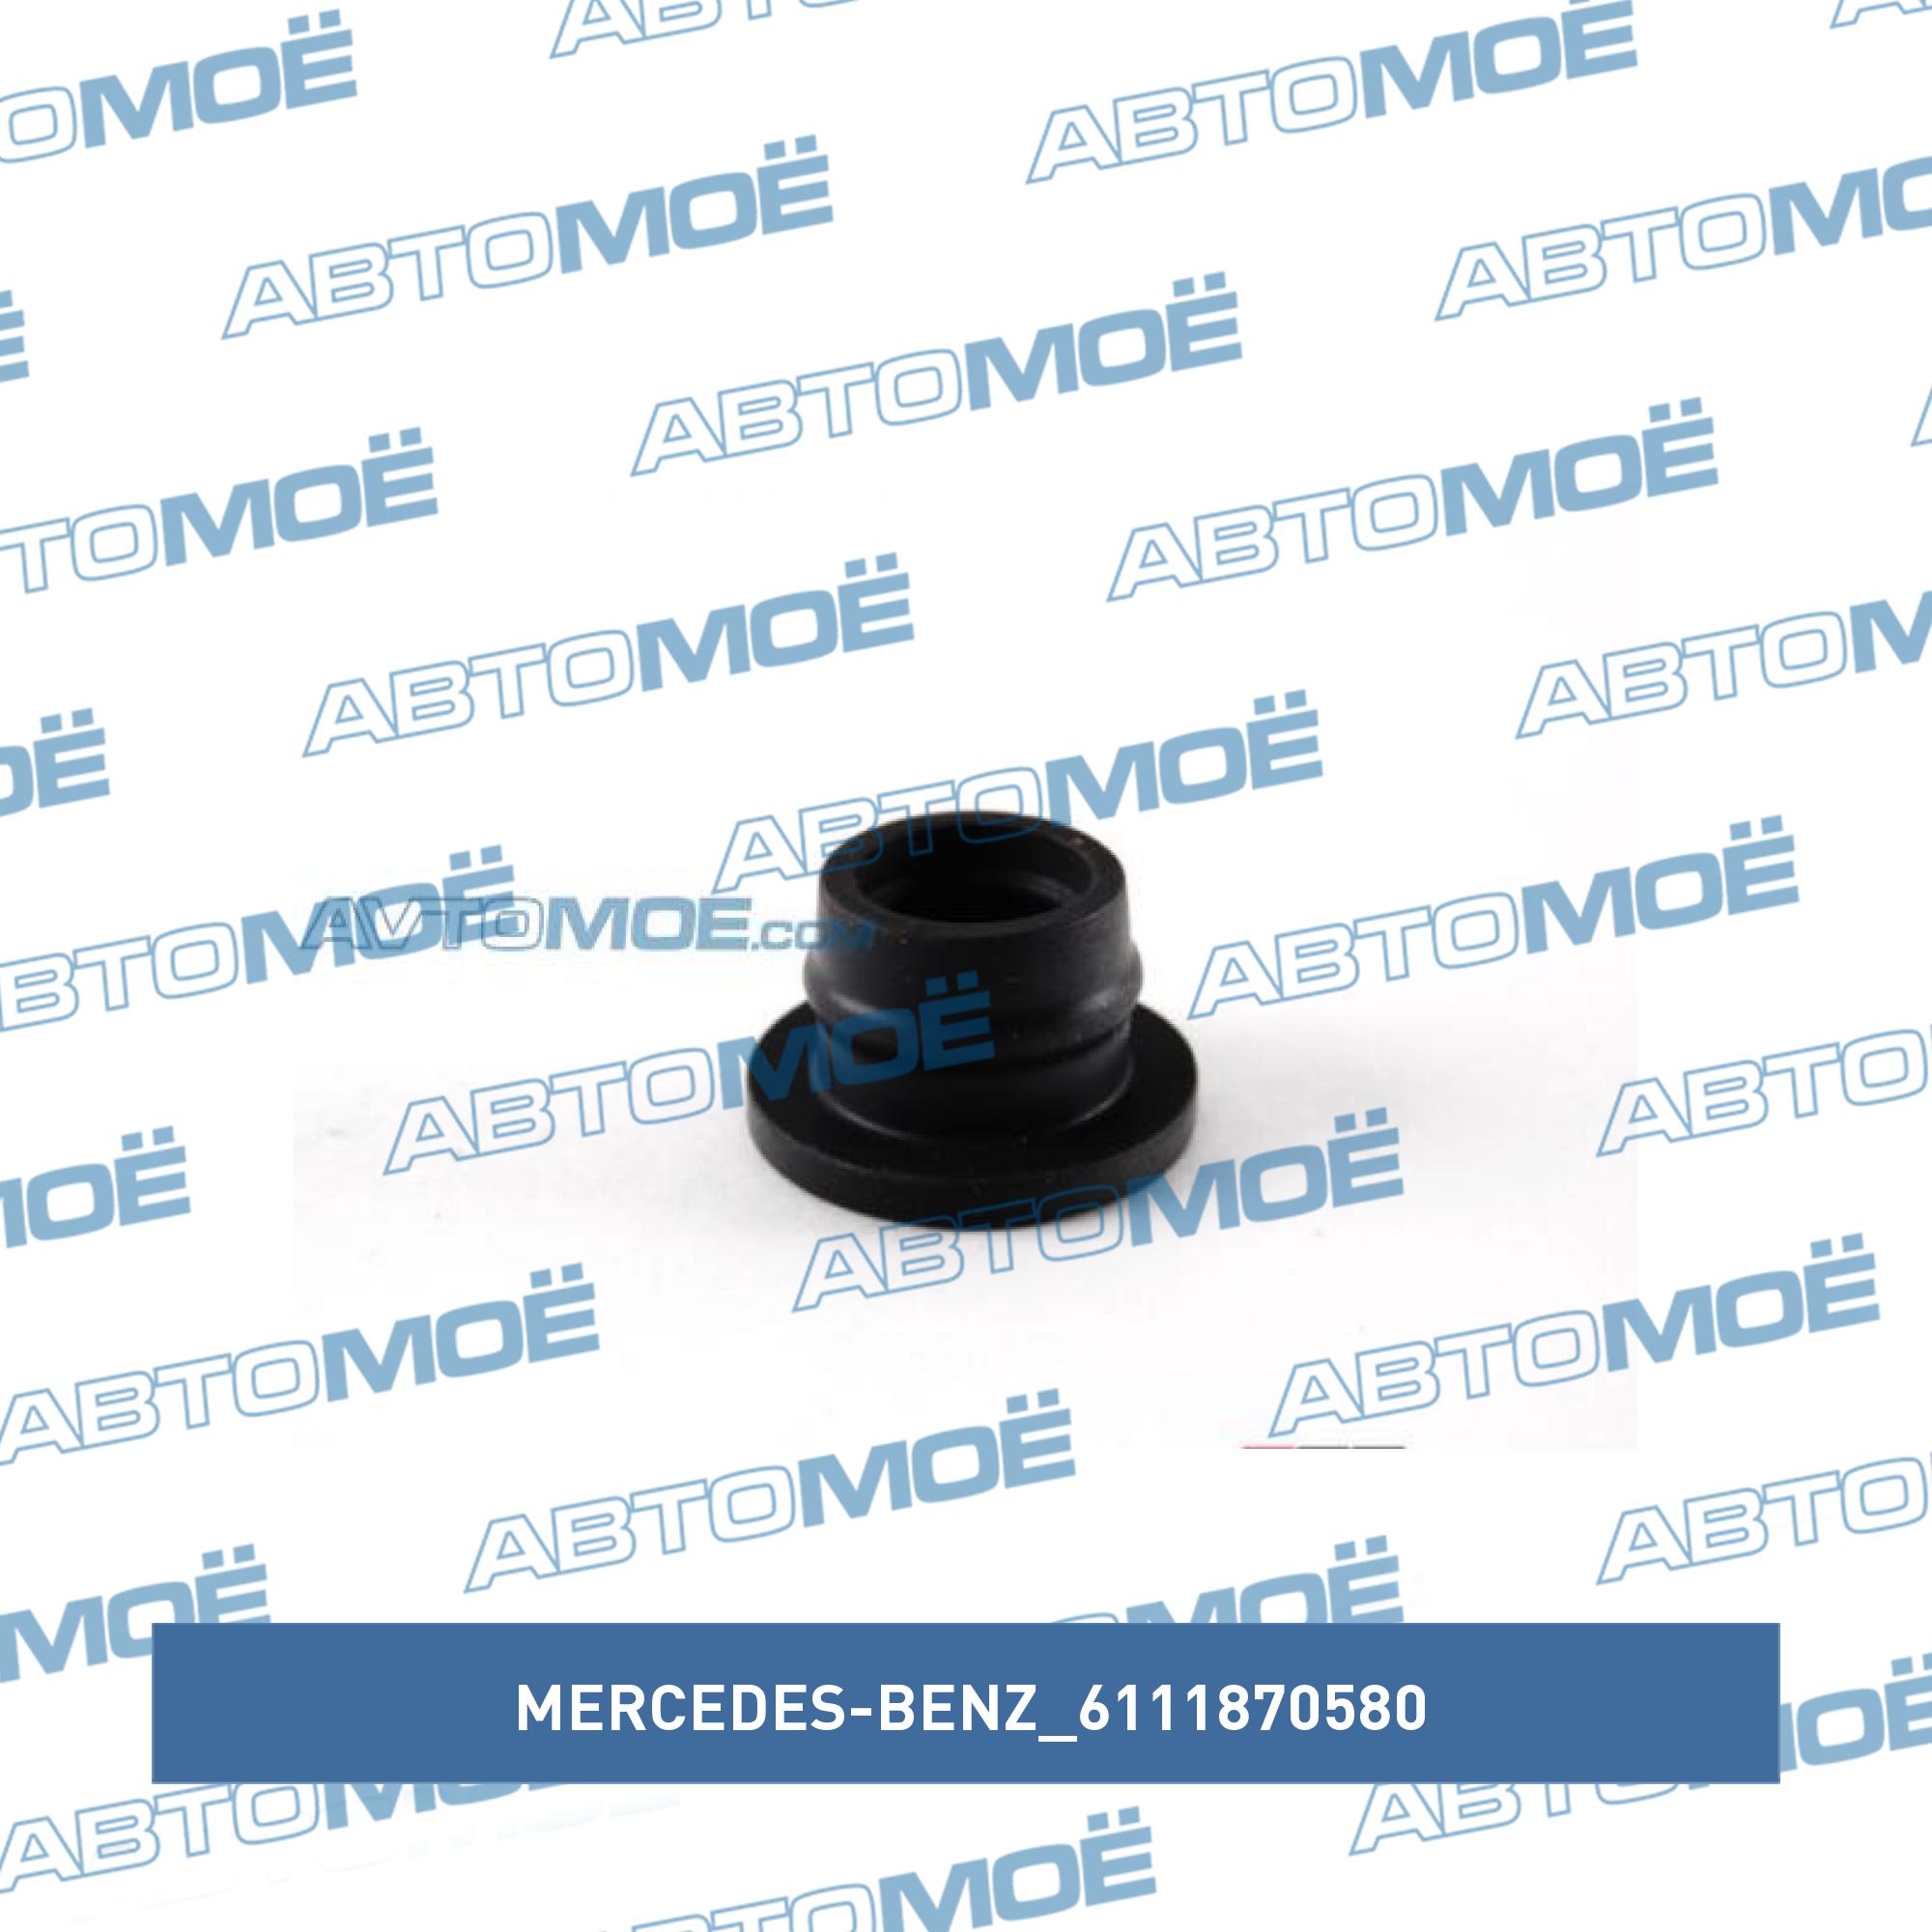 Прокладка масляной трубки турбины MERCEDES-BENZ 6111870580